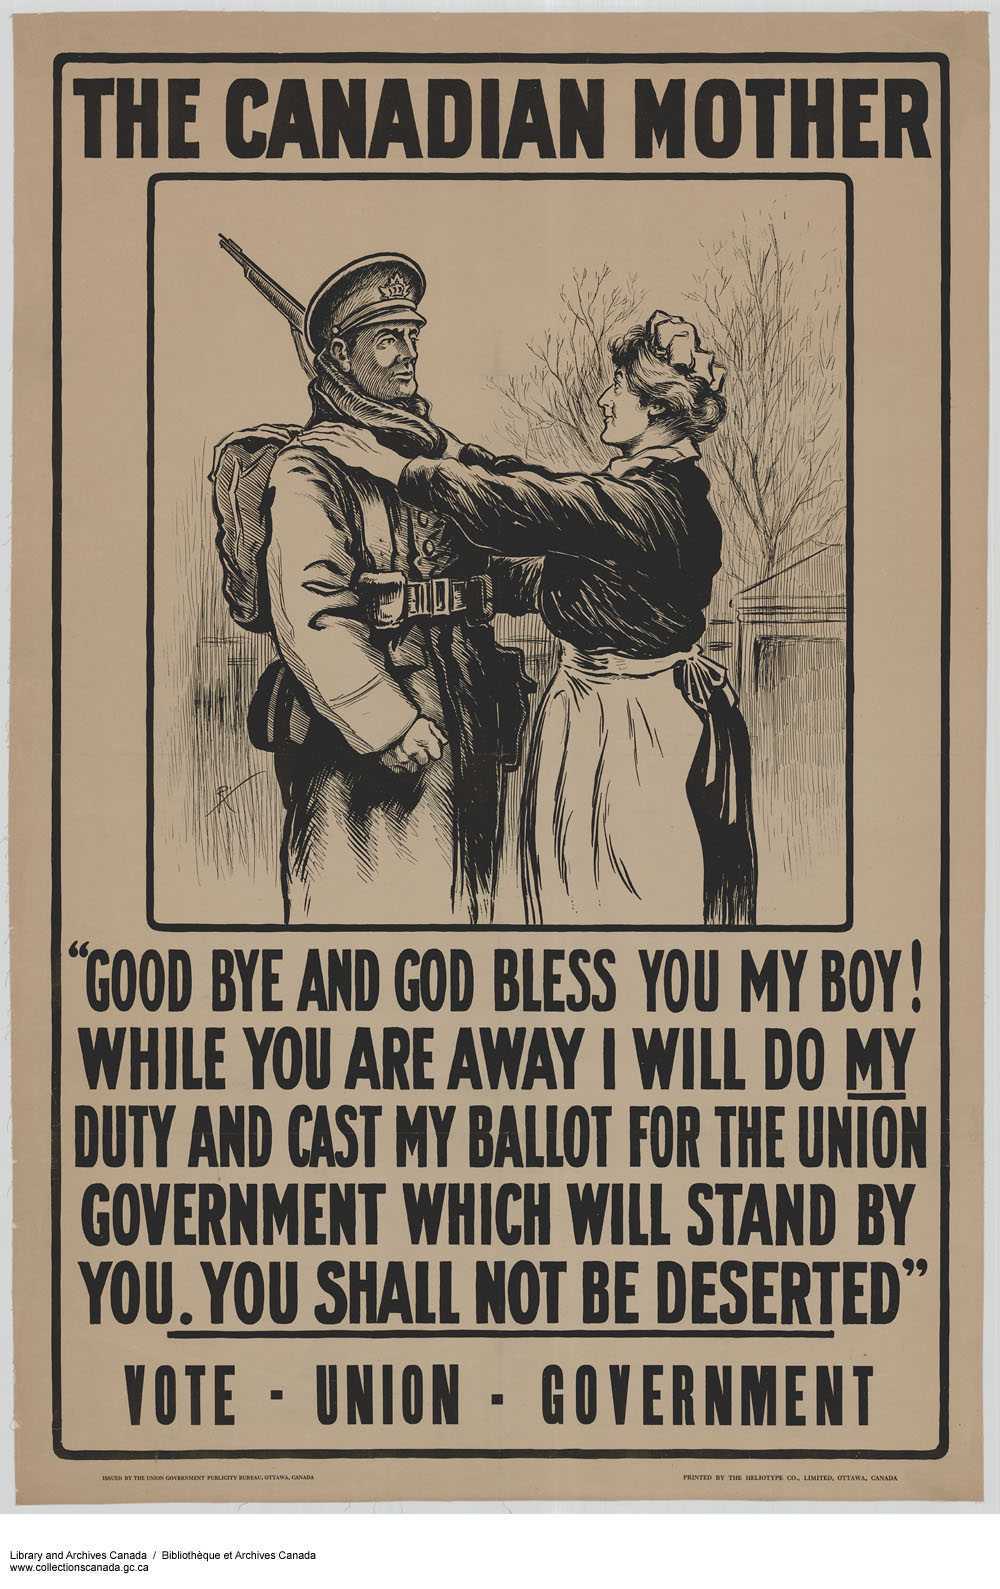 Illustration en noir et blanc, arrière-plan sépia. Une femme d'âge mur en tablier pose les mains sur l’épaule d’un soldat; elle le regarde avec admiration.